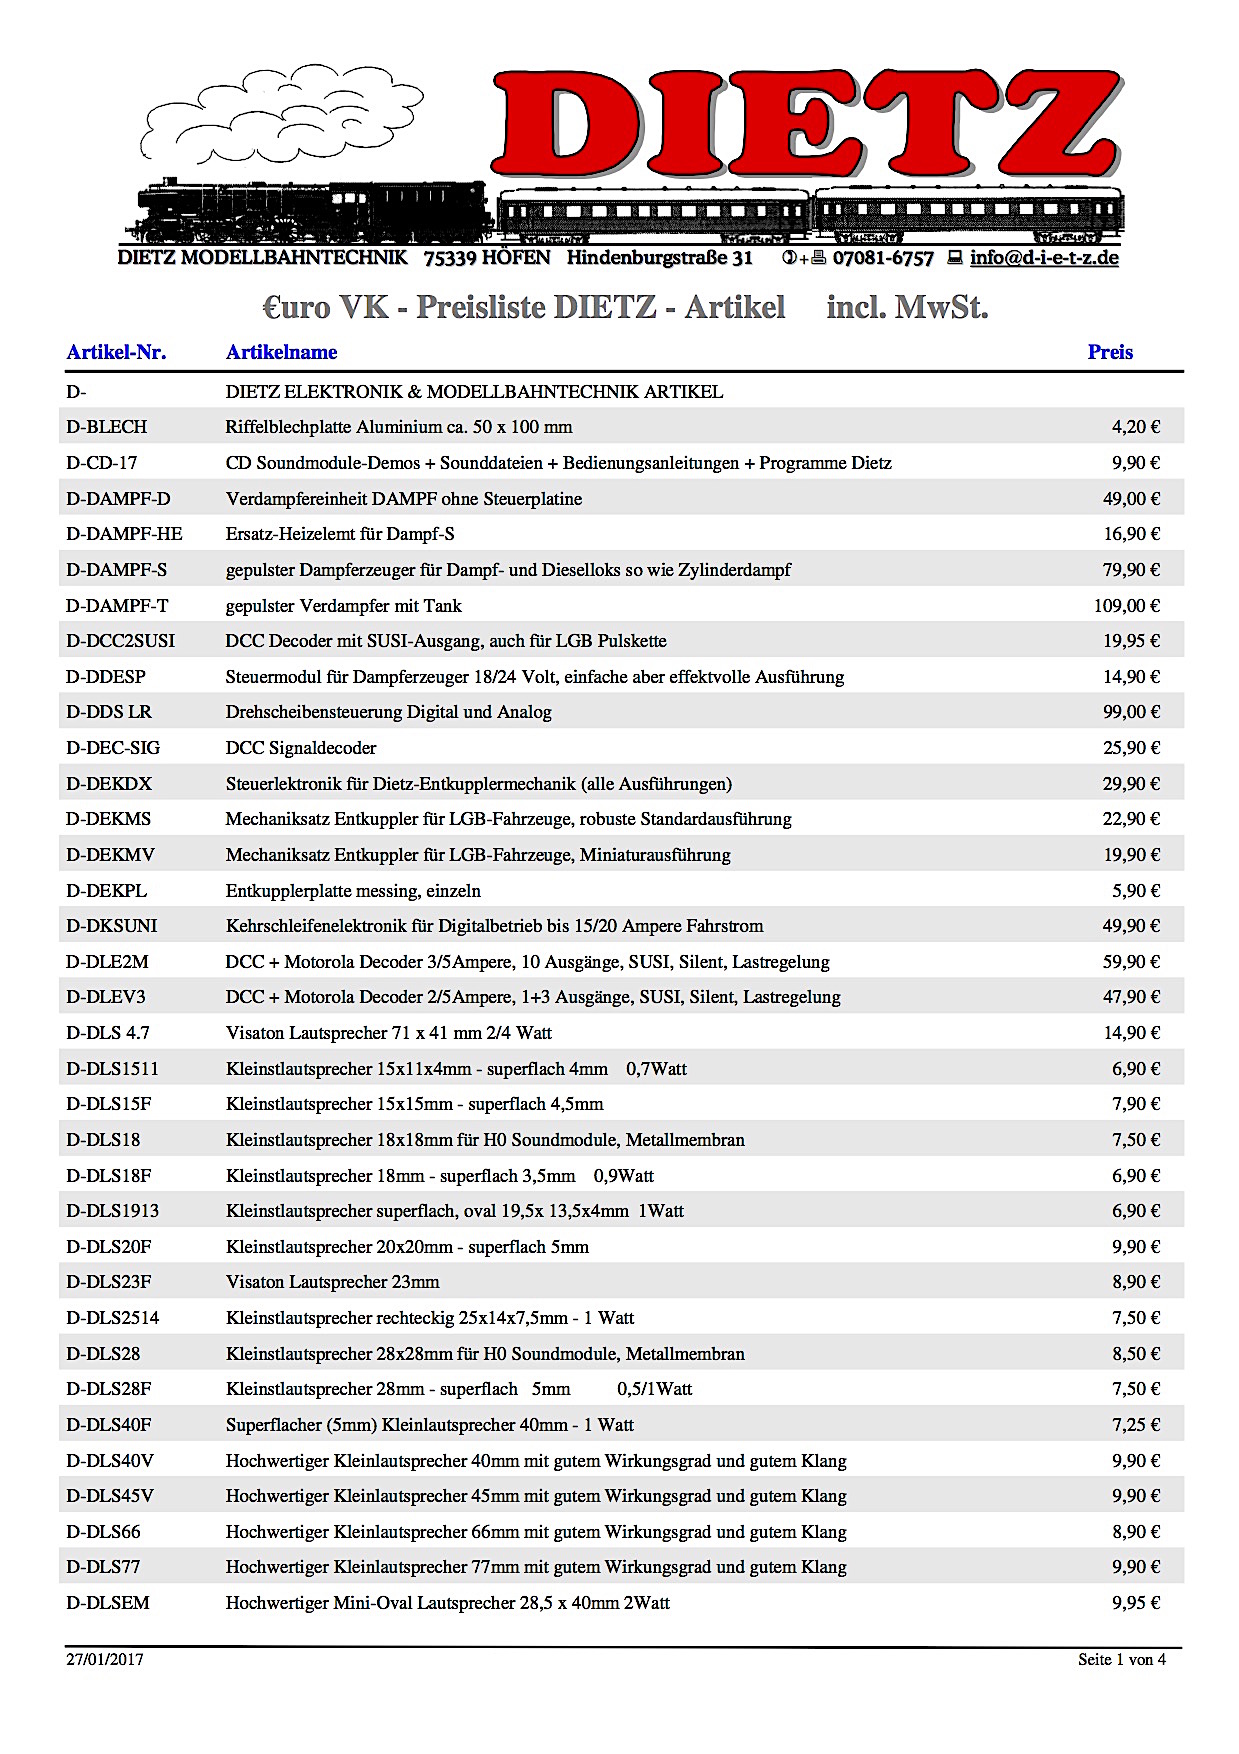 Dietz Preisliste (Price list) 2017